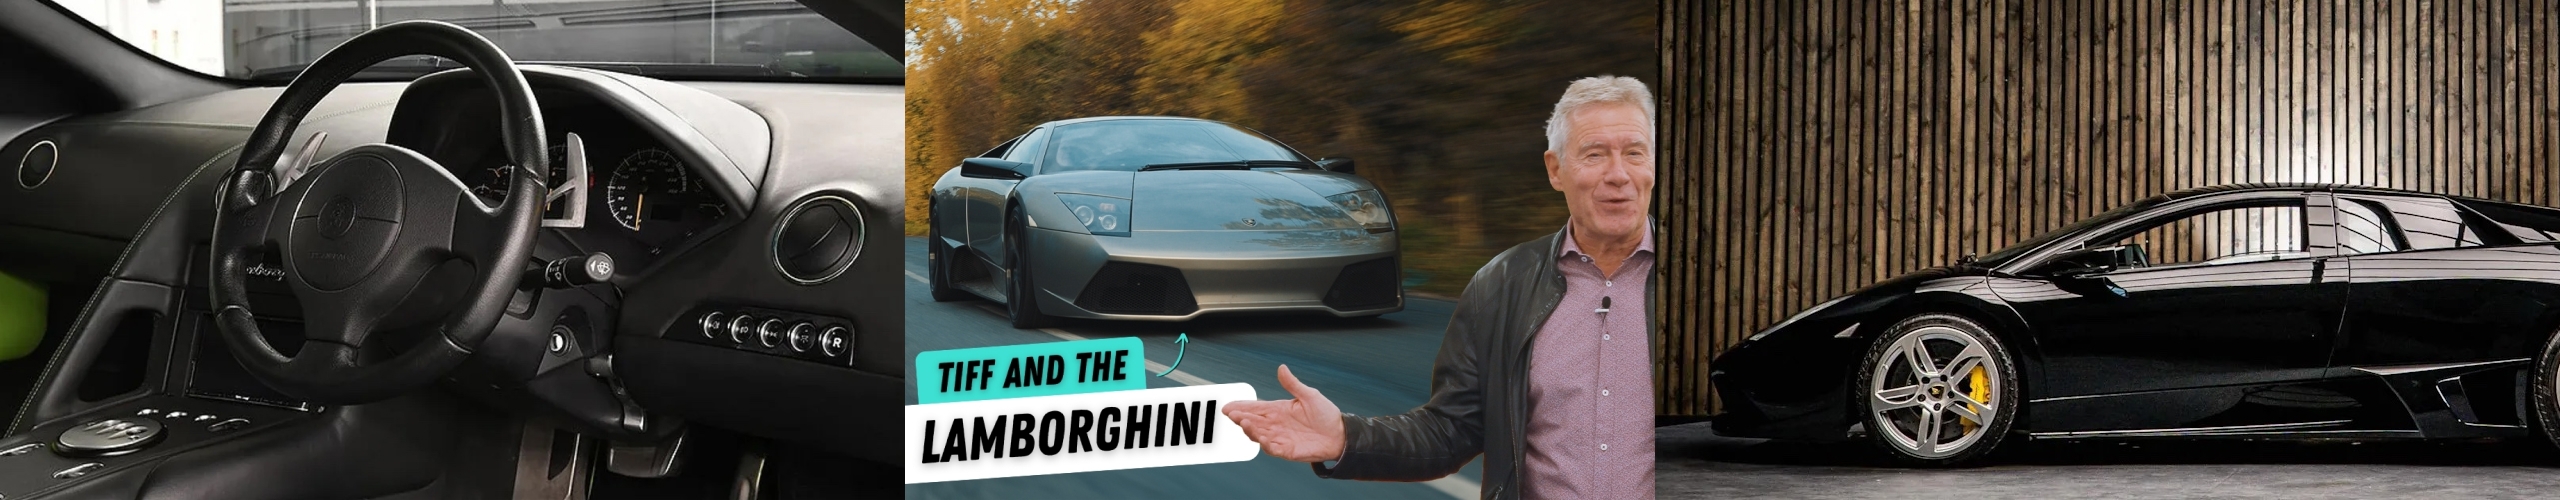 Carhuna Carpool: Tiff Drives the Lamborghini Murcielago LP 640